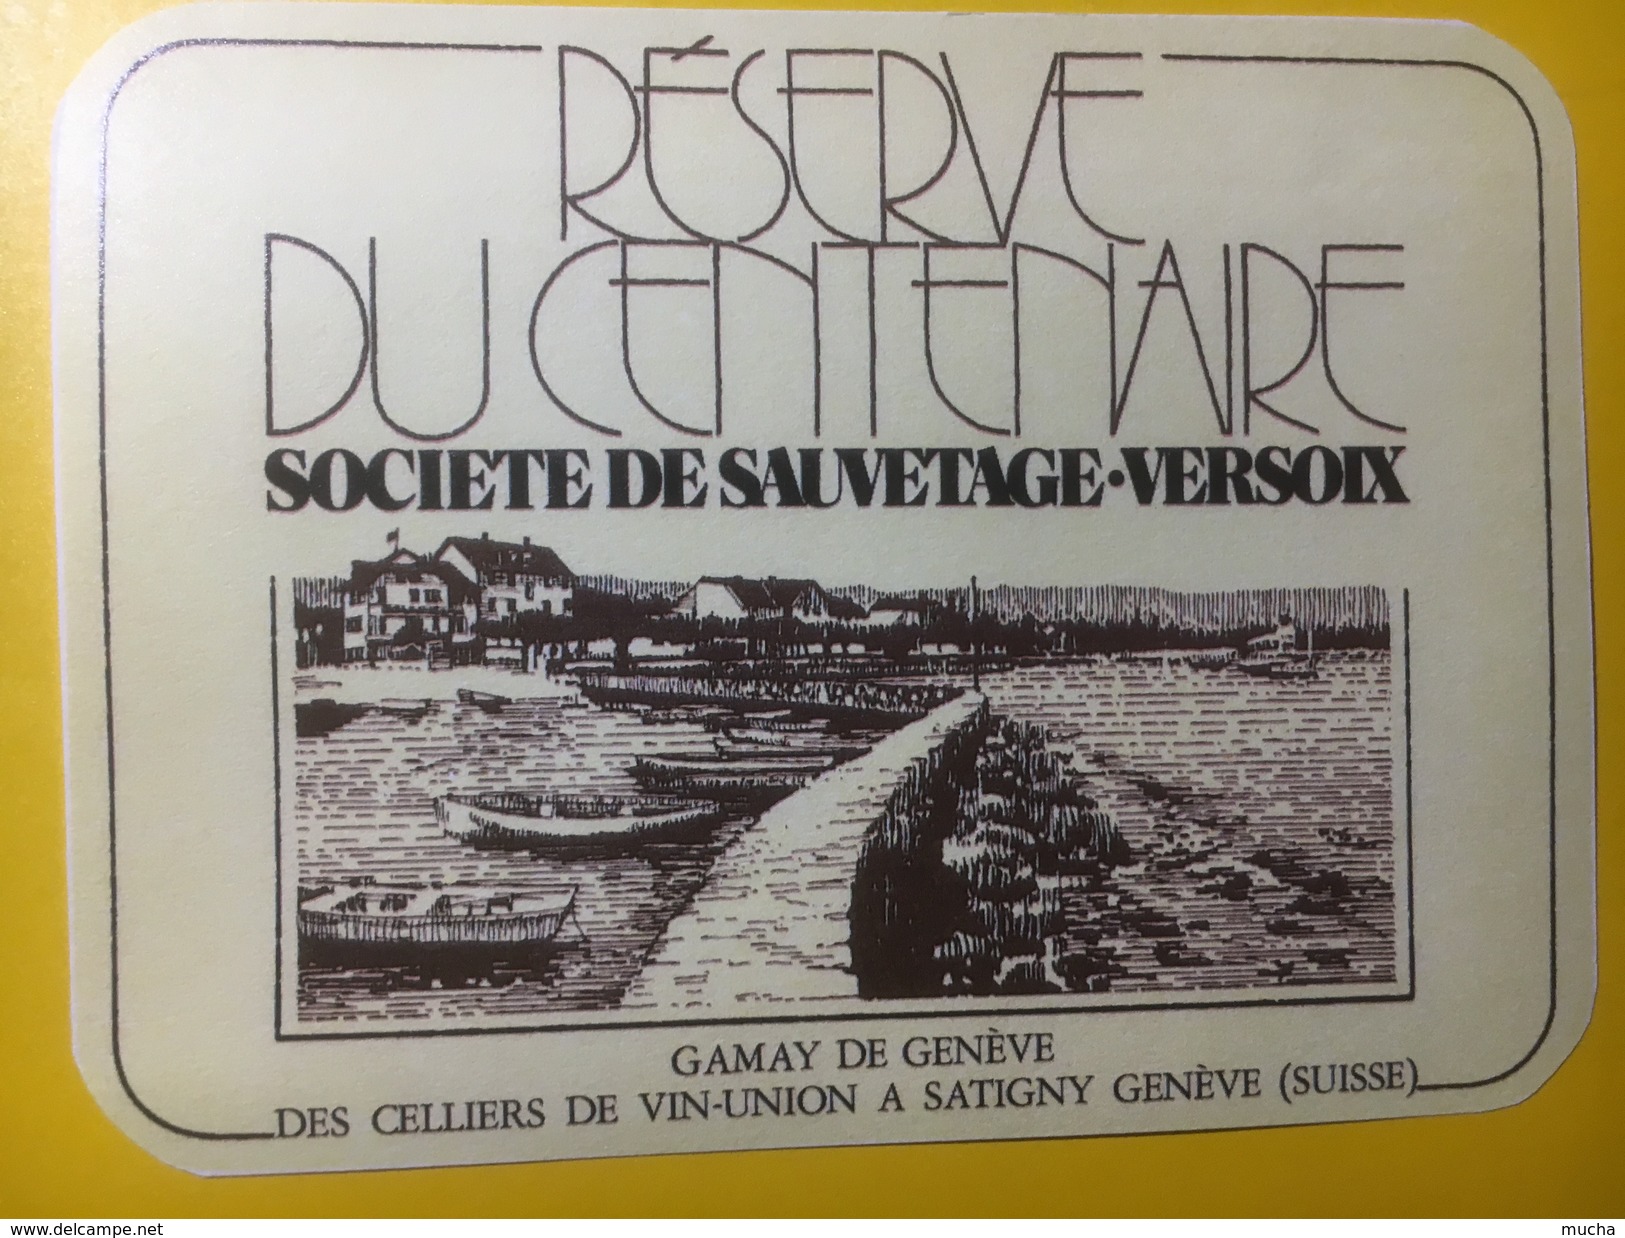 3746 - Réserve Du Centenaire Société De Sauvetage Versoix  Gamay De Genève - Bateaux à Voile & Voiliers